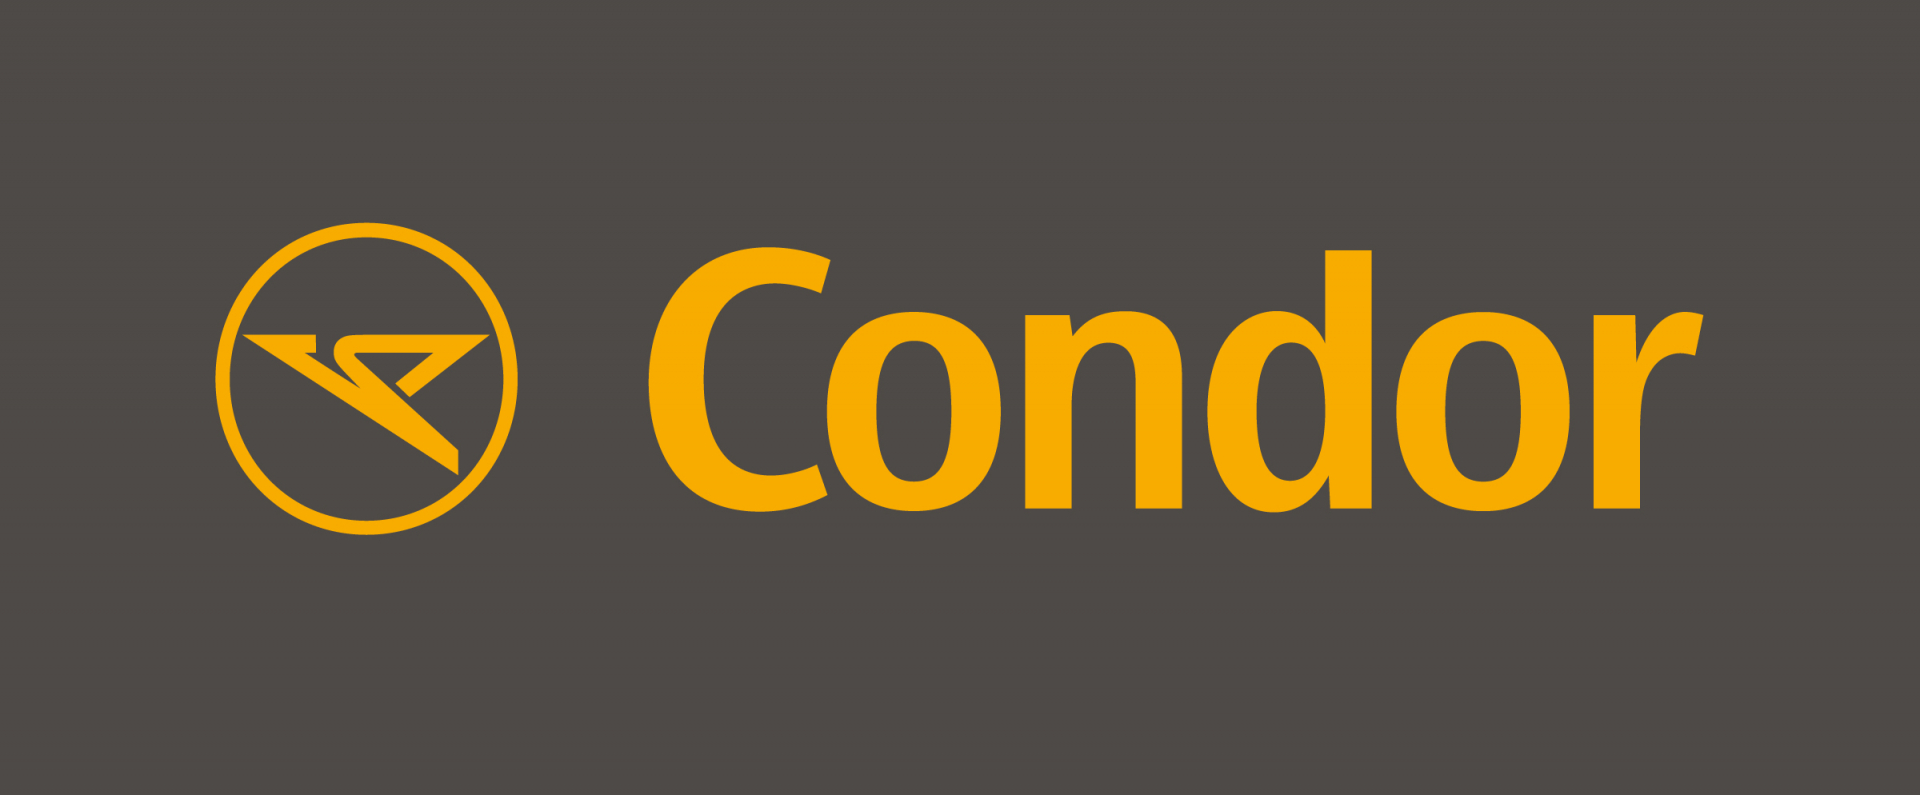 Condor_Logo